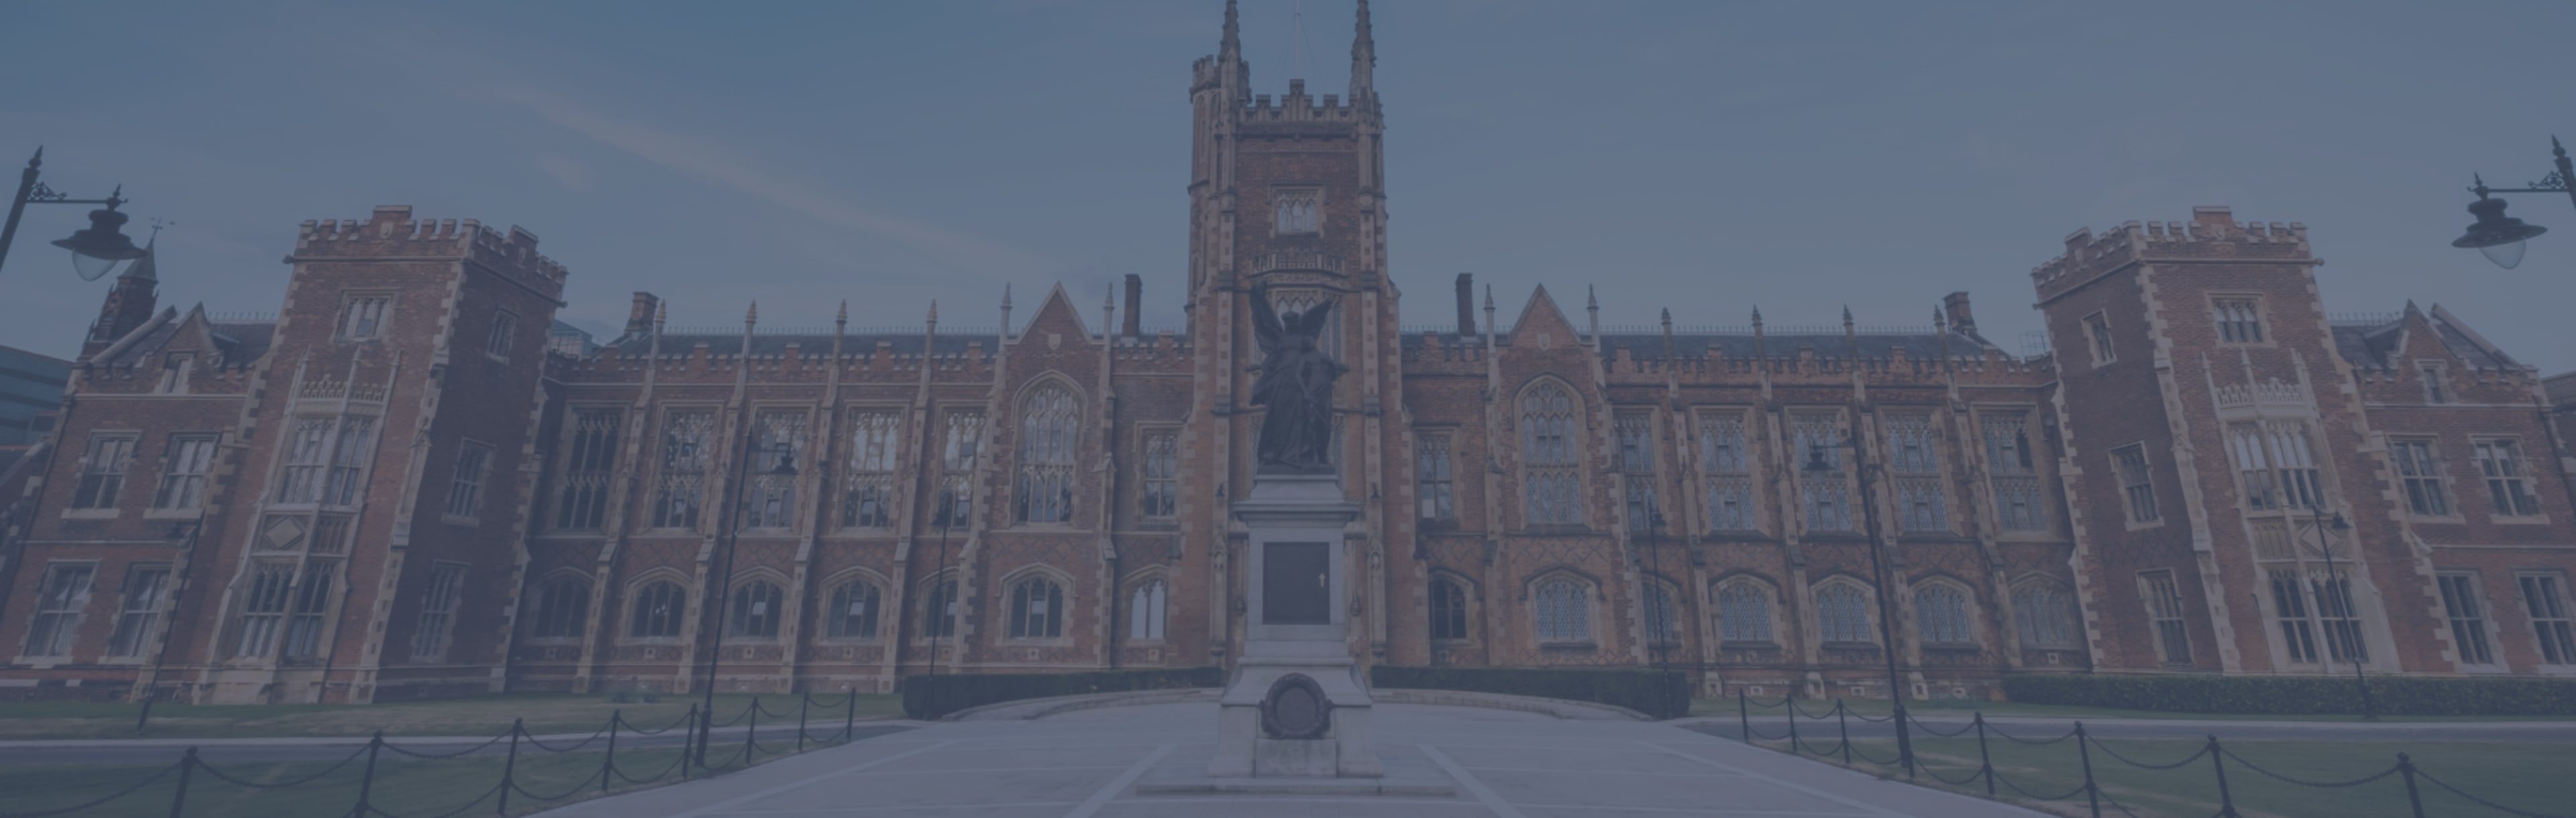 Queen's University Belfast PgDip in Violenza, Terrorismo e Sicurezza